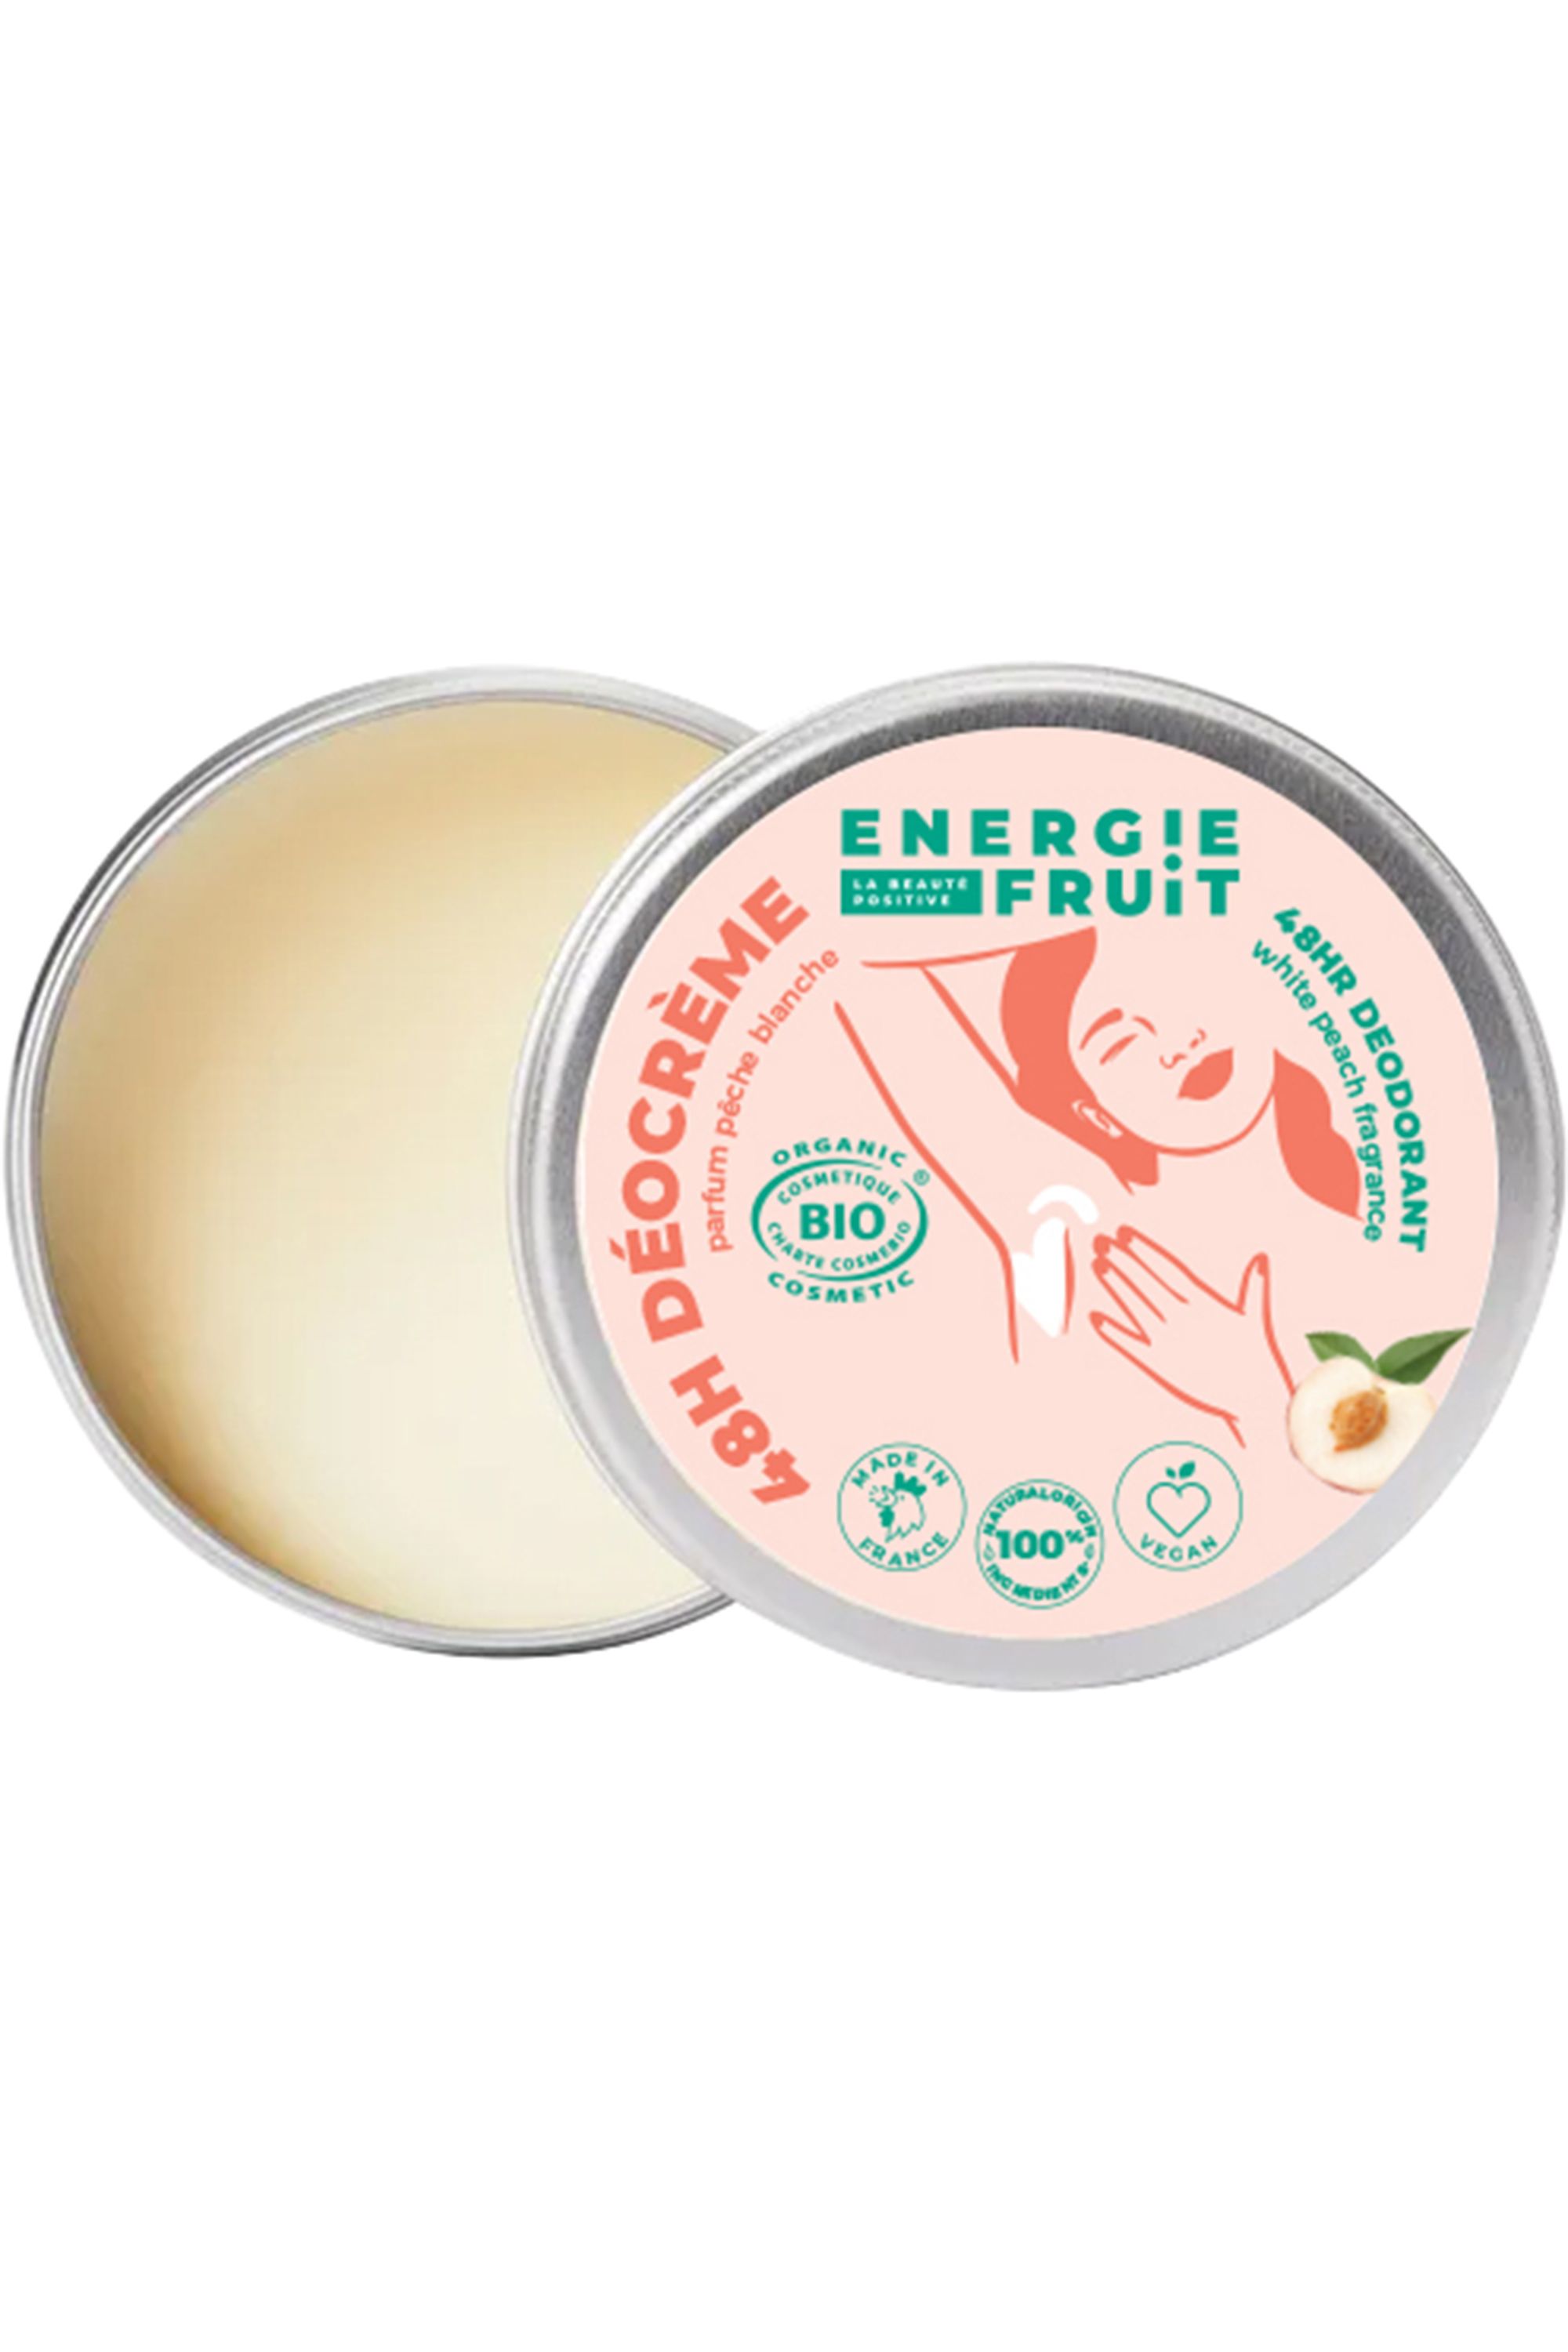 Energie Fruit - Déodorant crème pêche blanche certifié bio - Blissim